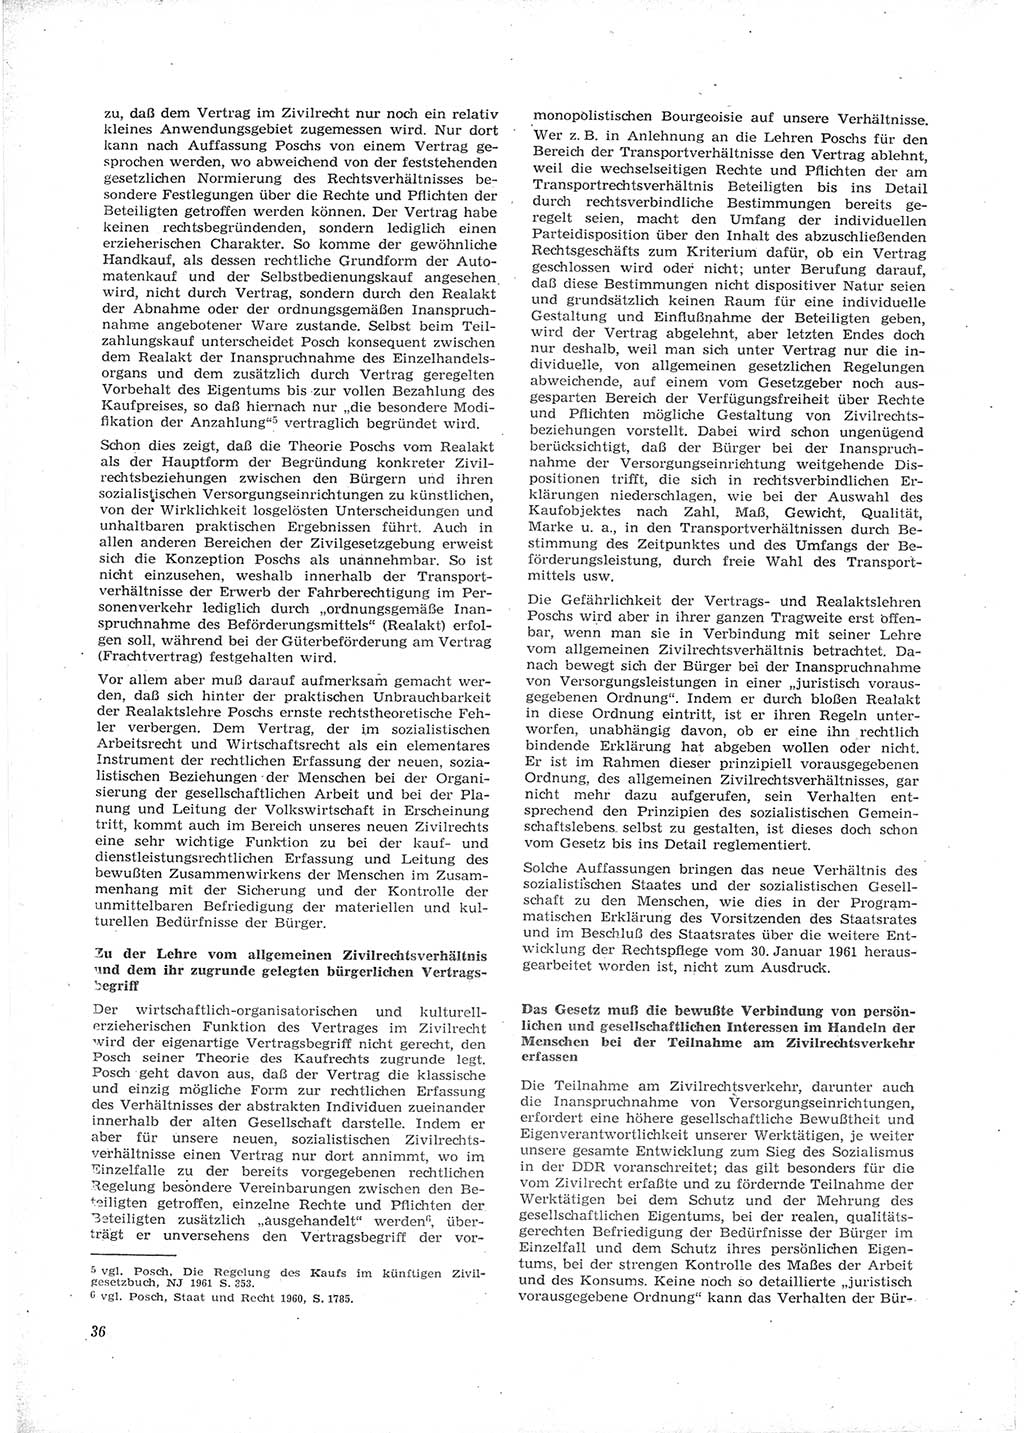 Neue Justiz (NJ), Zeitschrift für Recht und Rechtswissenschaft [Deutsche Demokratische Republik (DDR)], 16. Jahrgang 1962, Seite 36 (NJ DDR 1962, S. 36)